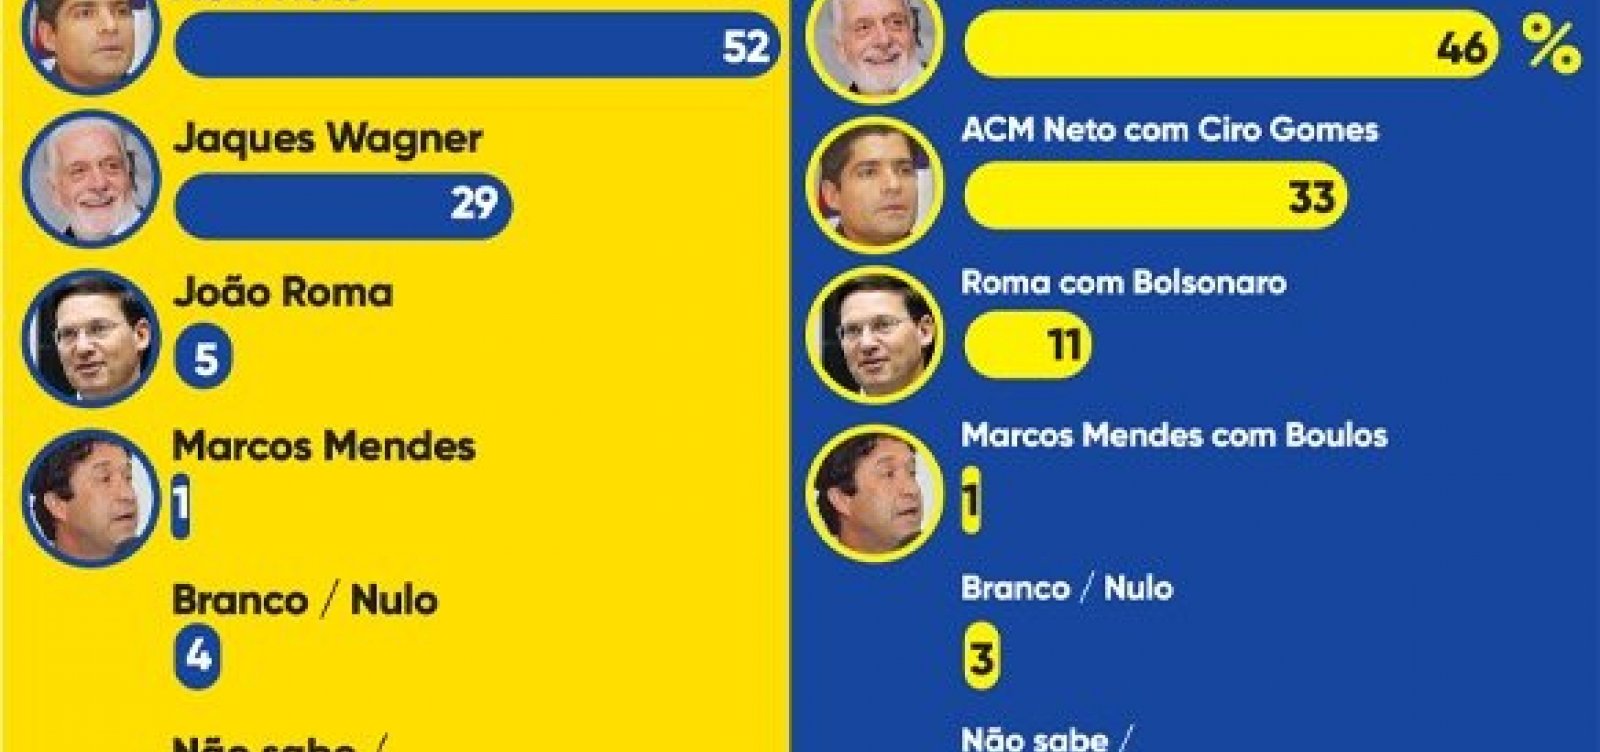 Com 52%, ACM Neto lidera pesquisa na Bahia; com Lula, Wagner passa na frente